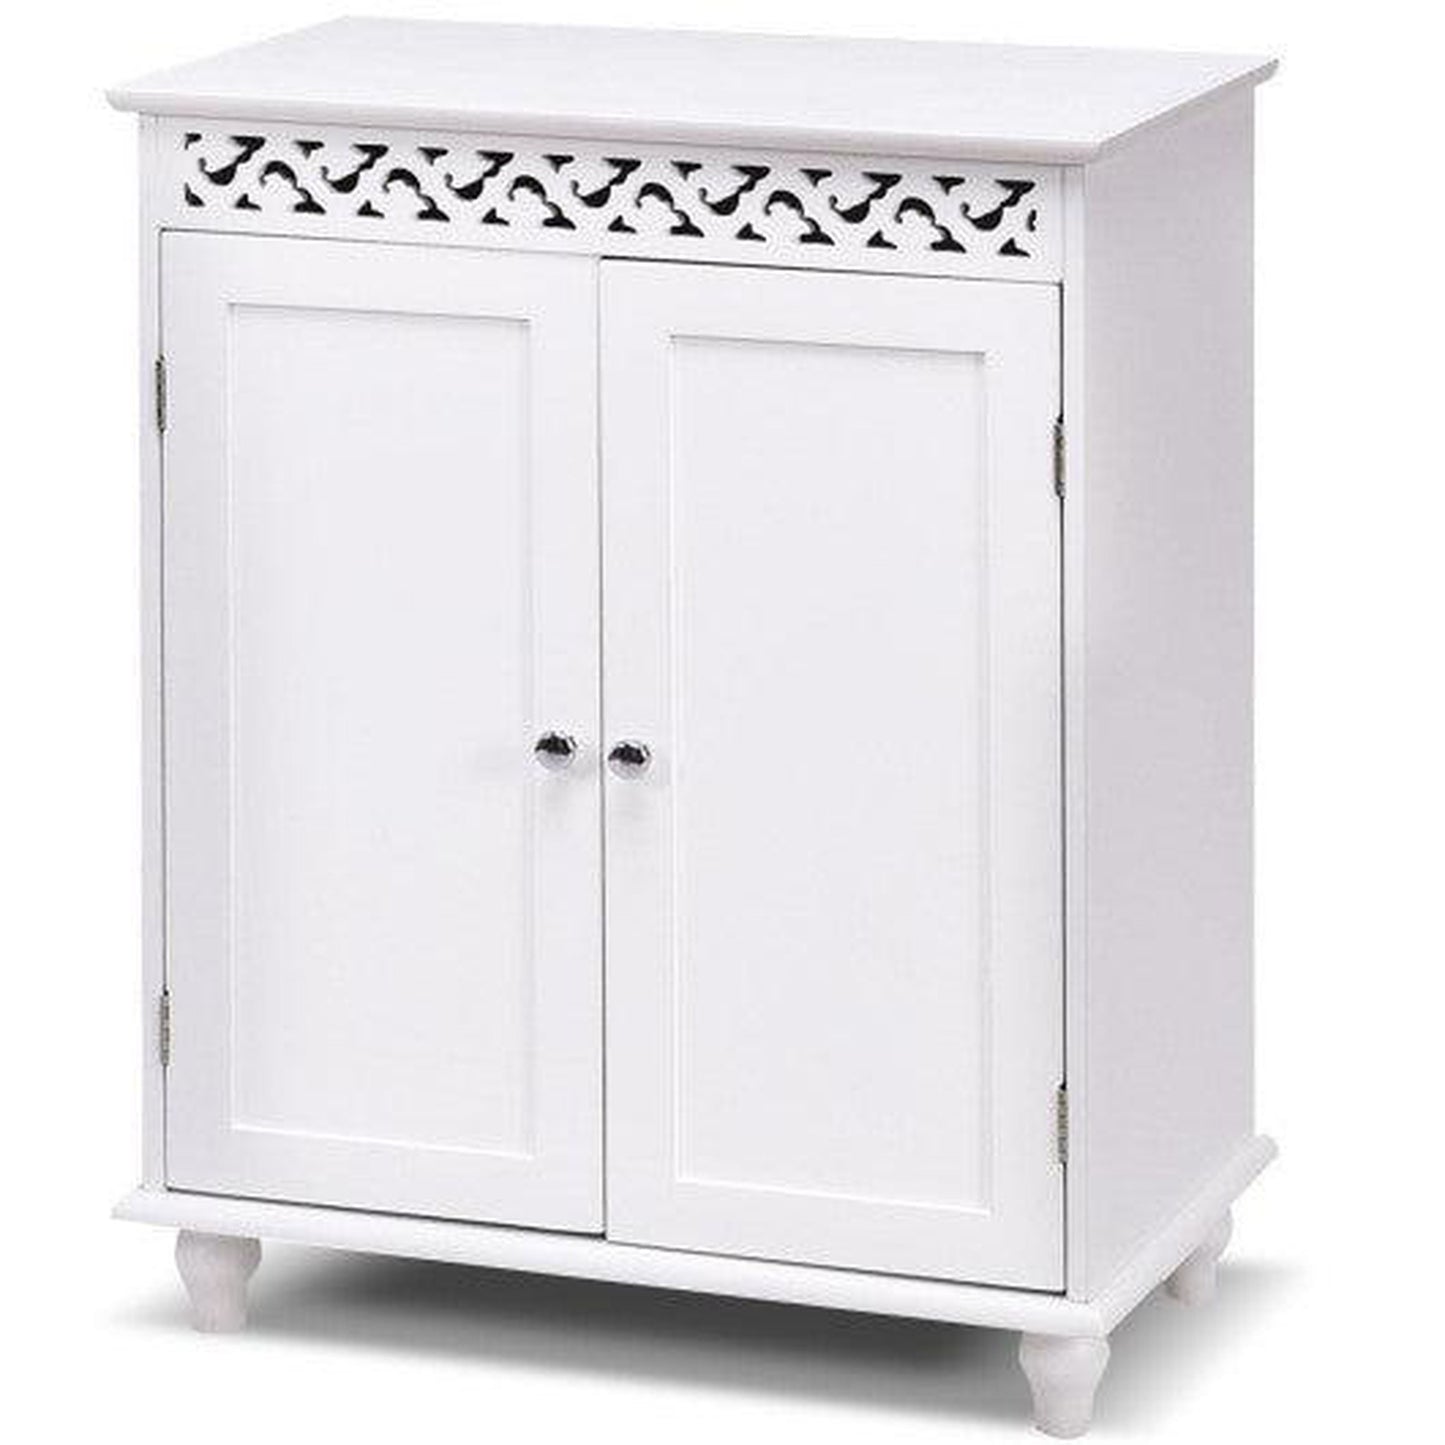 Costway White Wooden 2-Door Storage Cabinet Cupboard